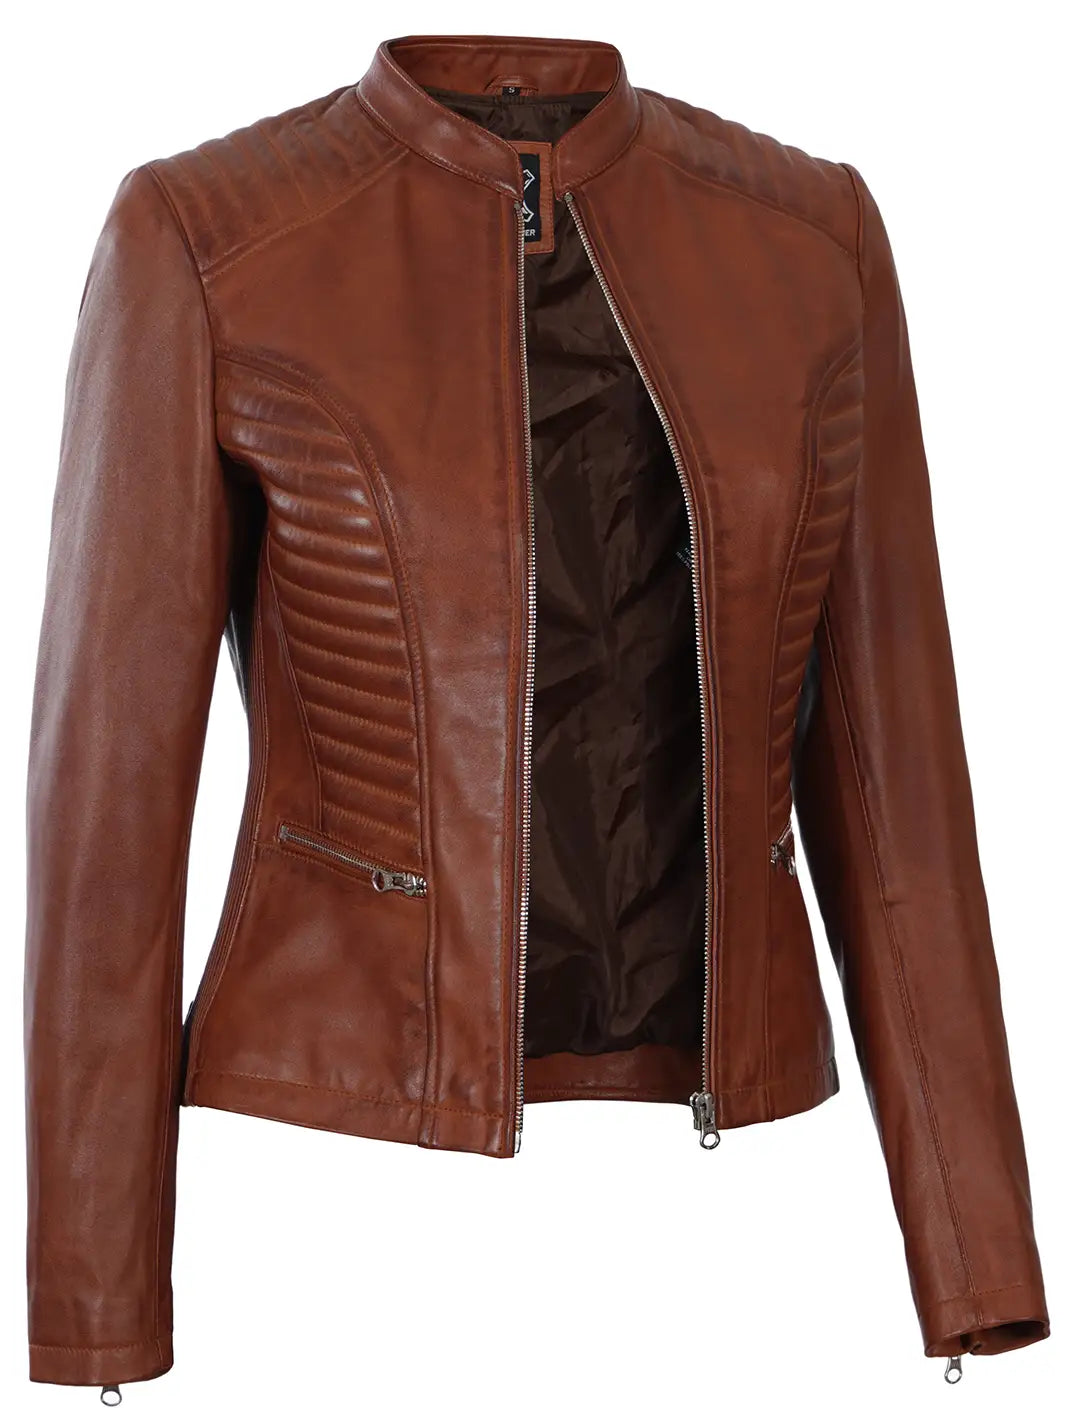 Womens leather moto jacket